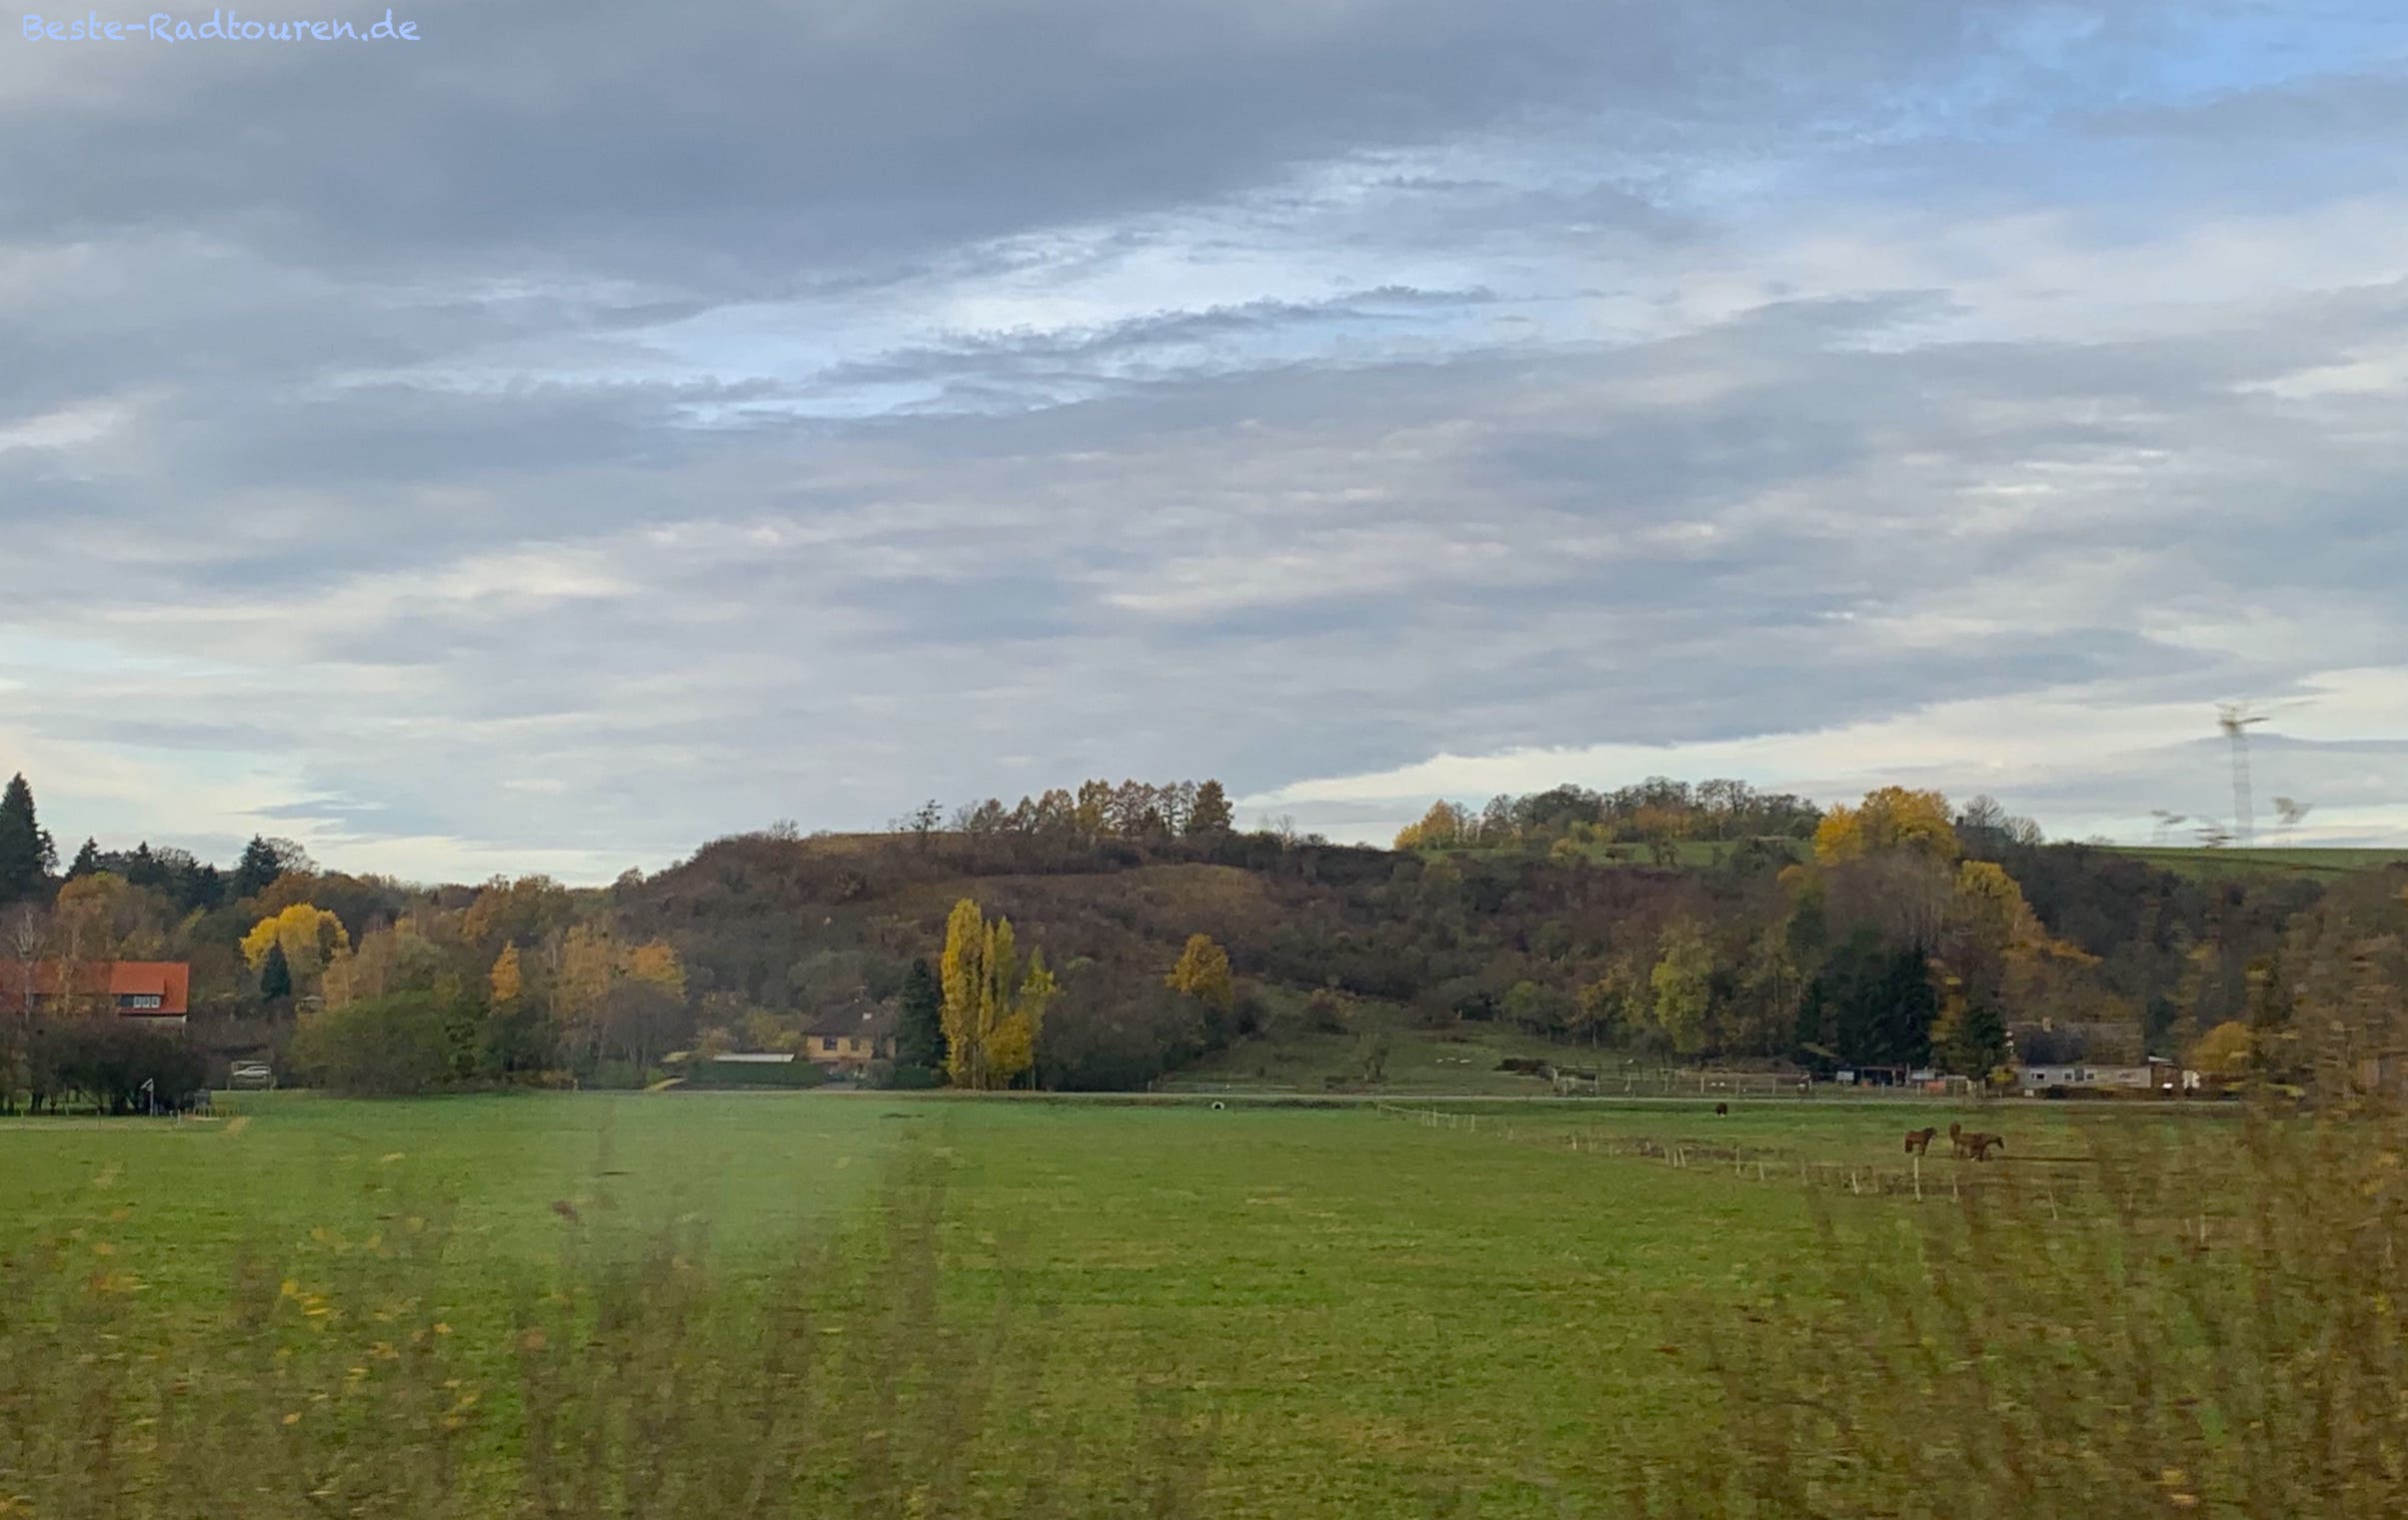 Landschaft bei Falkenberg (Mark) im Oderbruch, Landkreis Märkisch Oderland